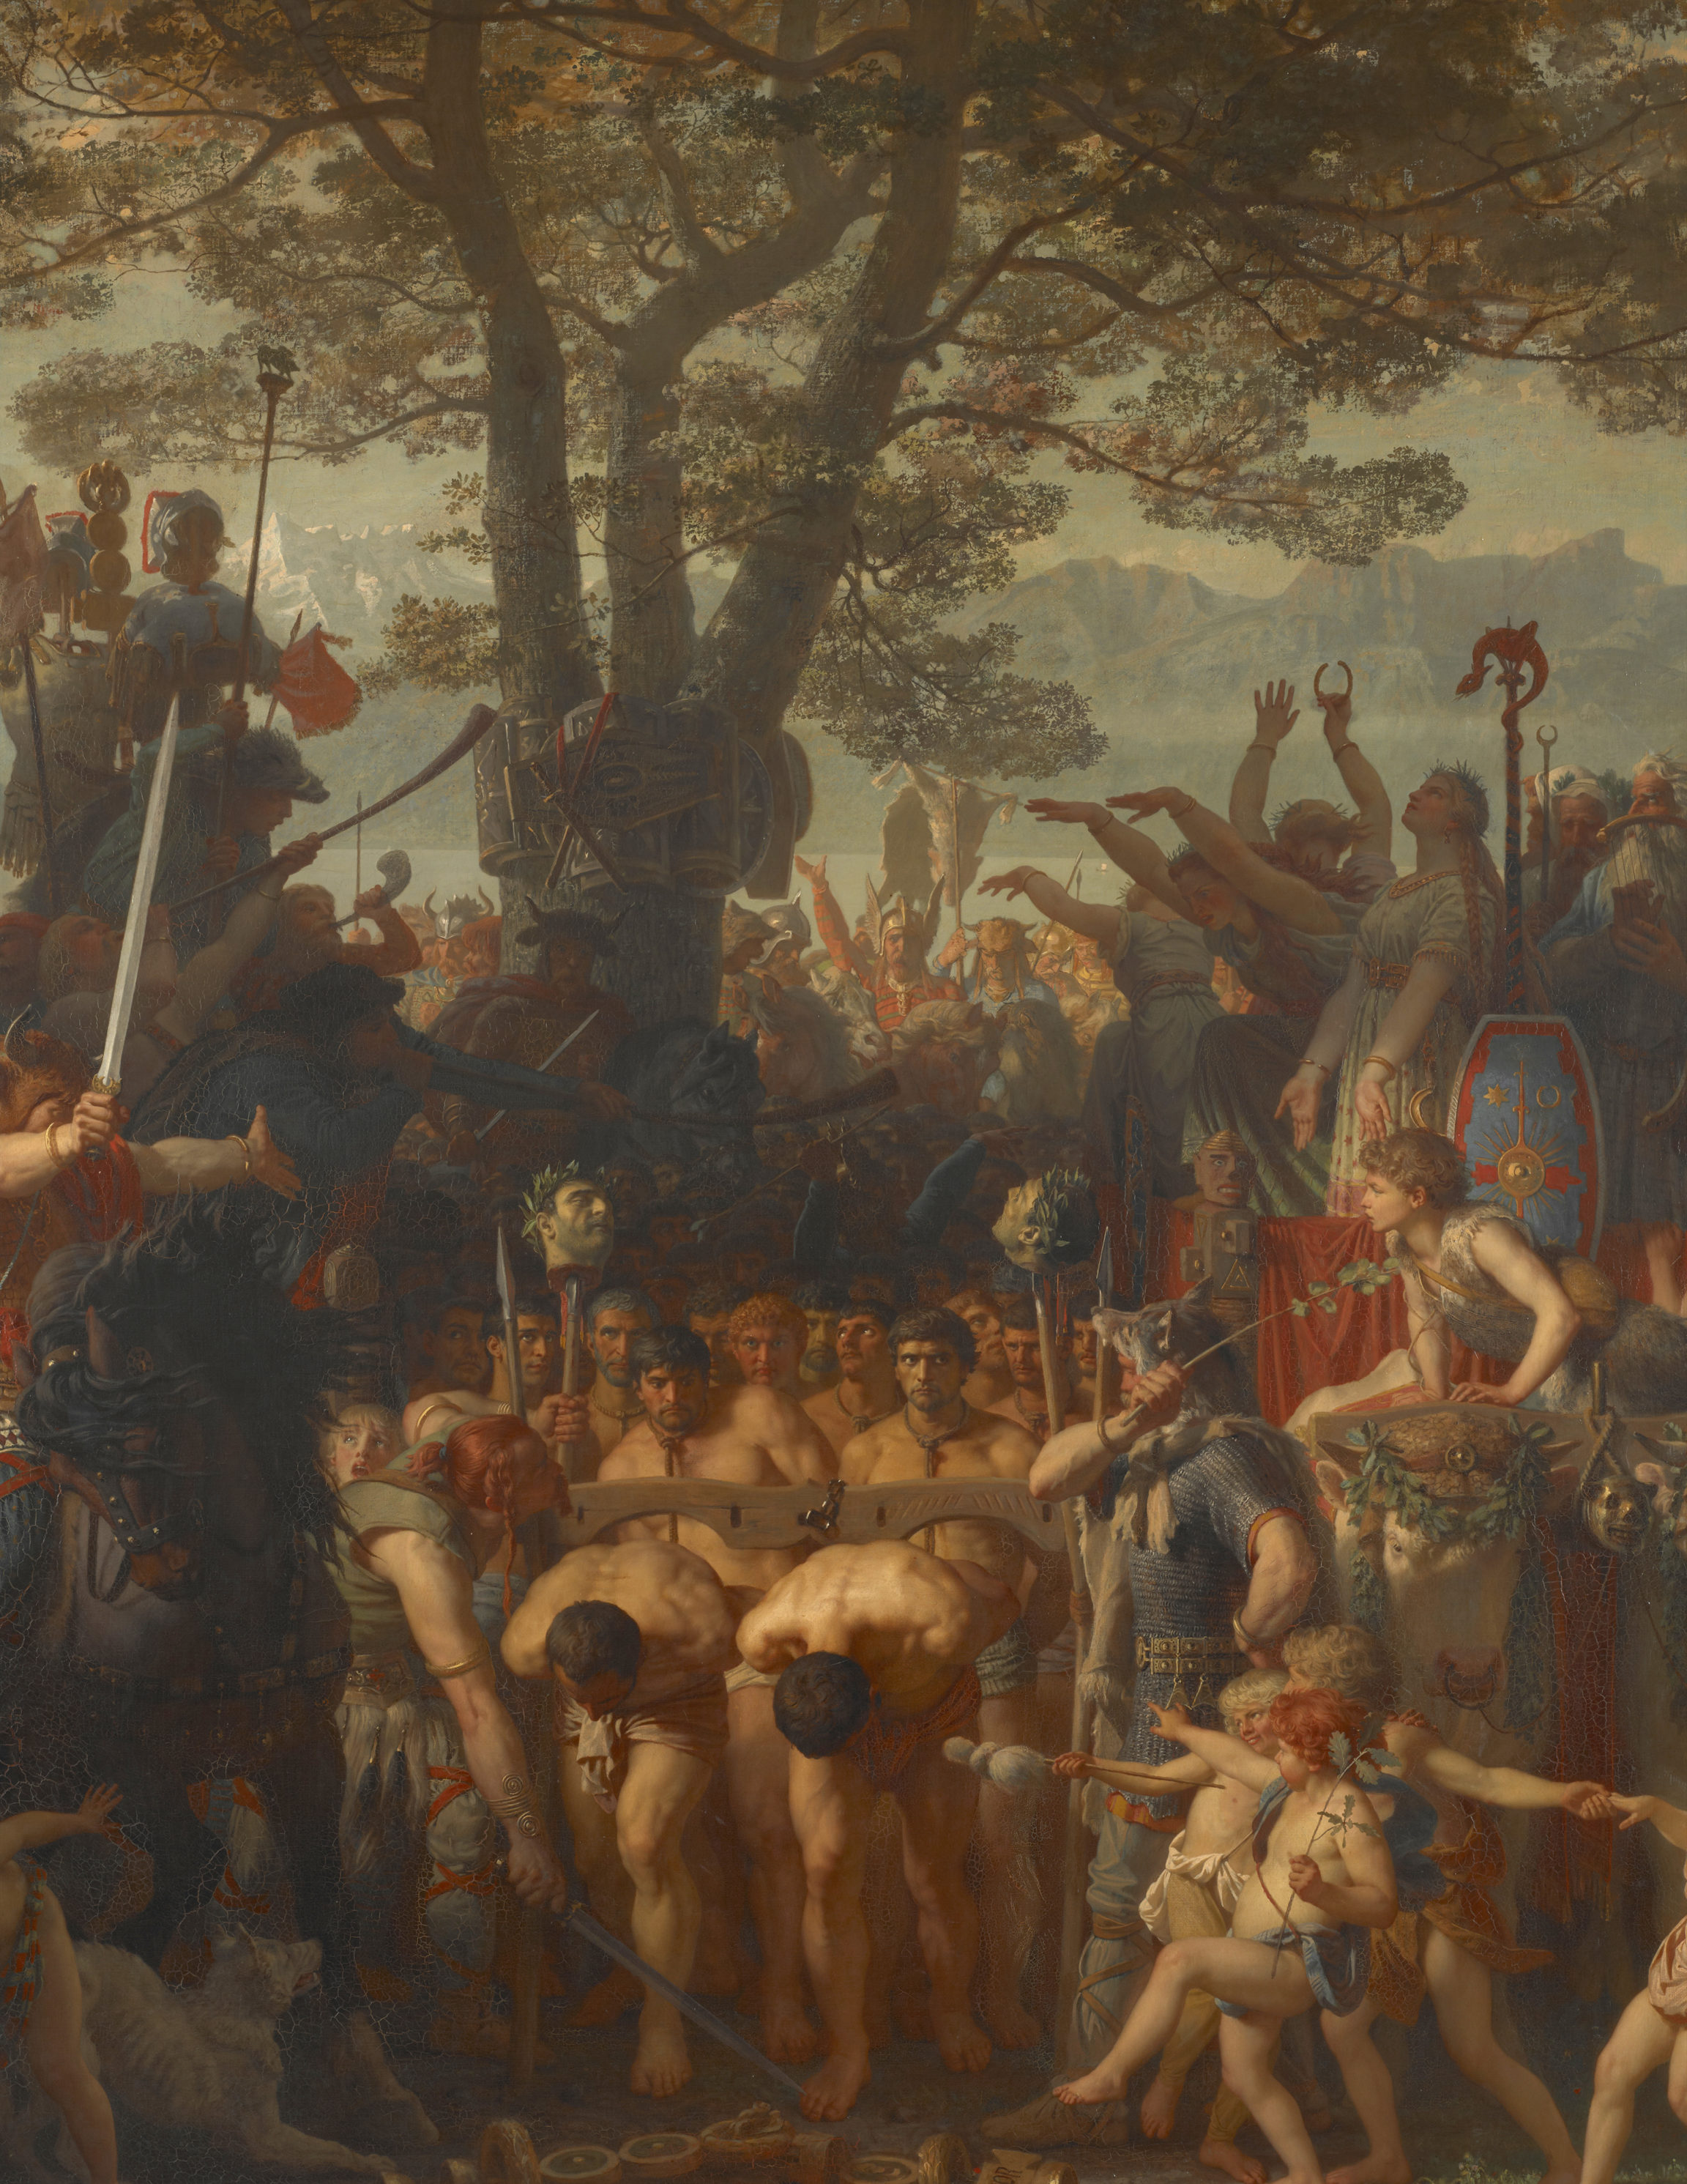 Charles Gleyre, Les Romains passant sous le joug (Romans Passing under the Yoke) or La bataille du Léman (The Battle of Léman), 1858